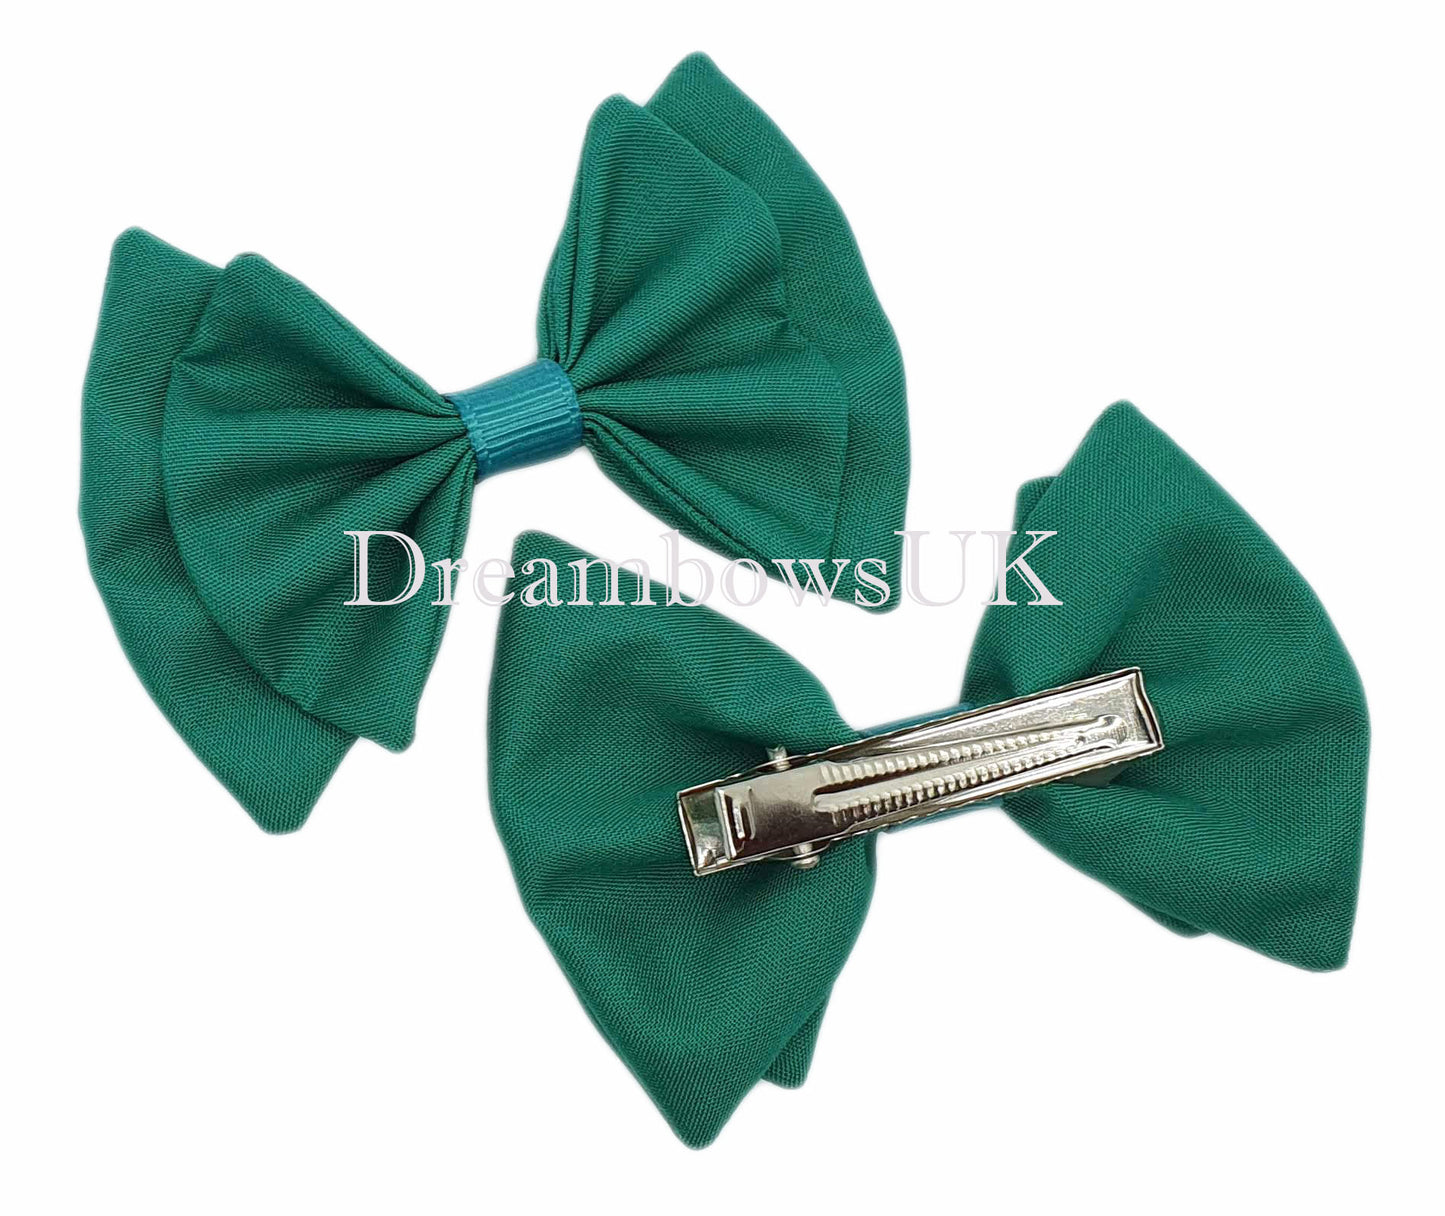 2x Jade green fabric hair bows - DreambowsUK